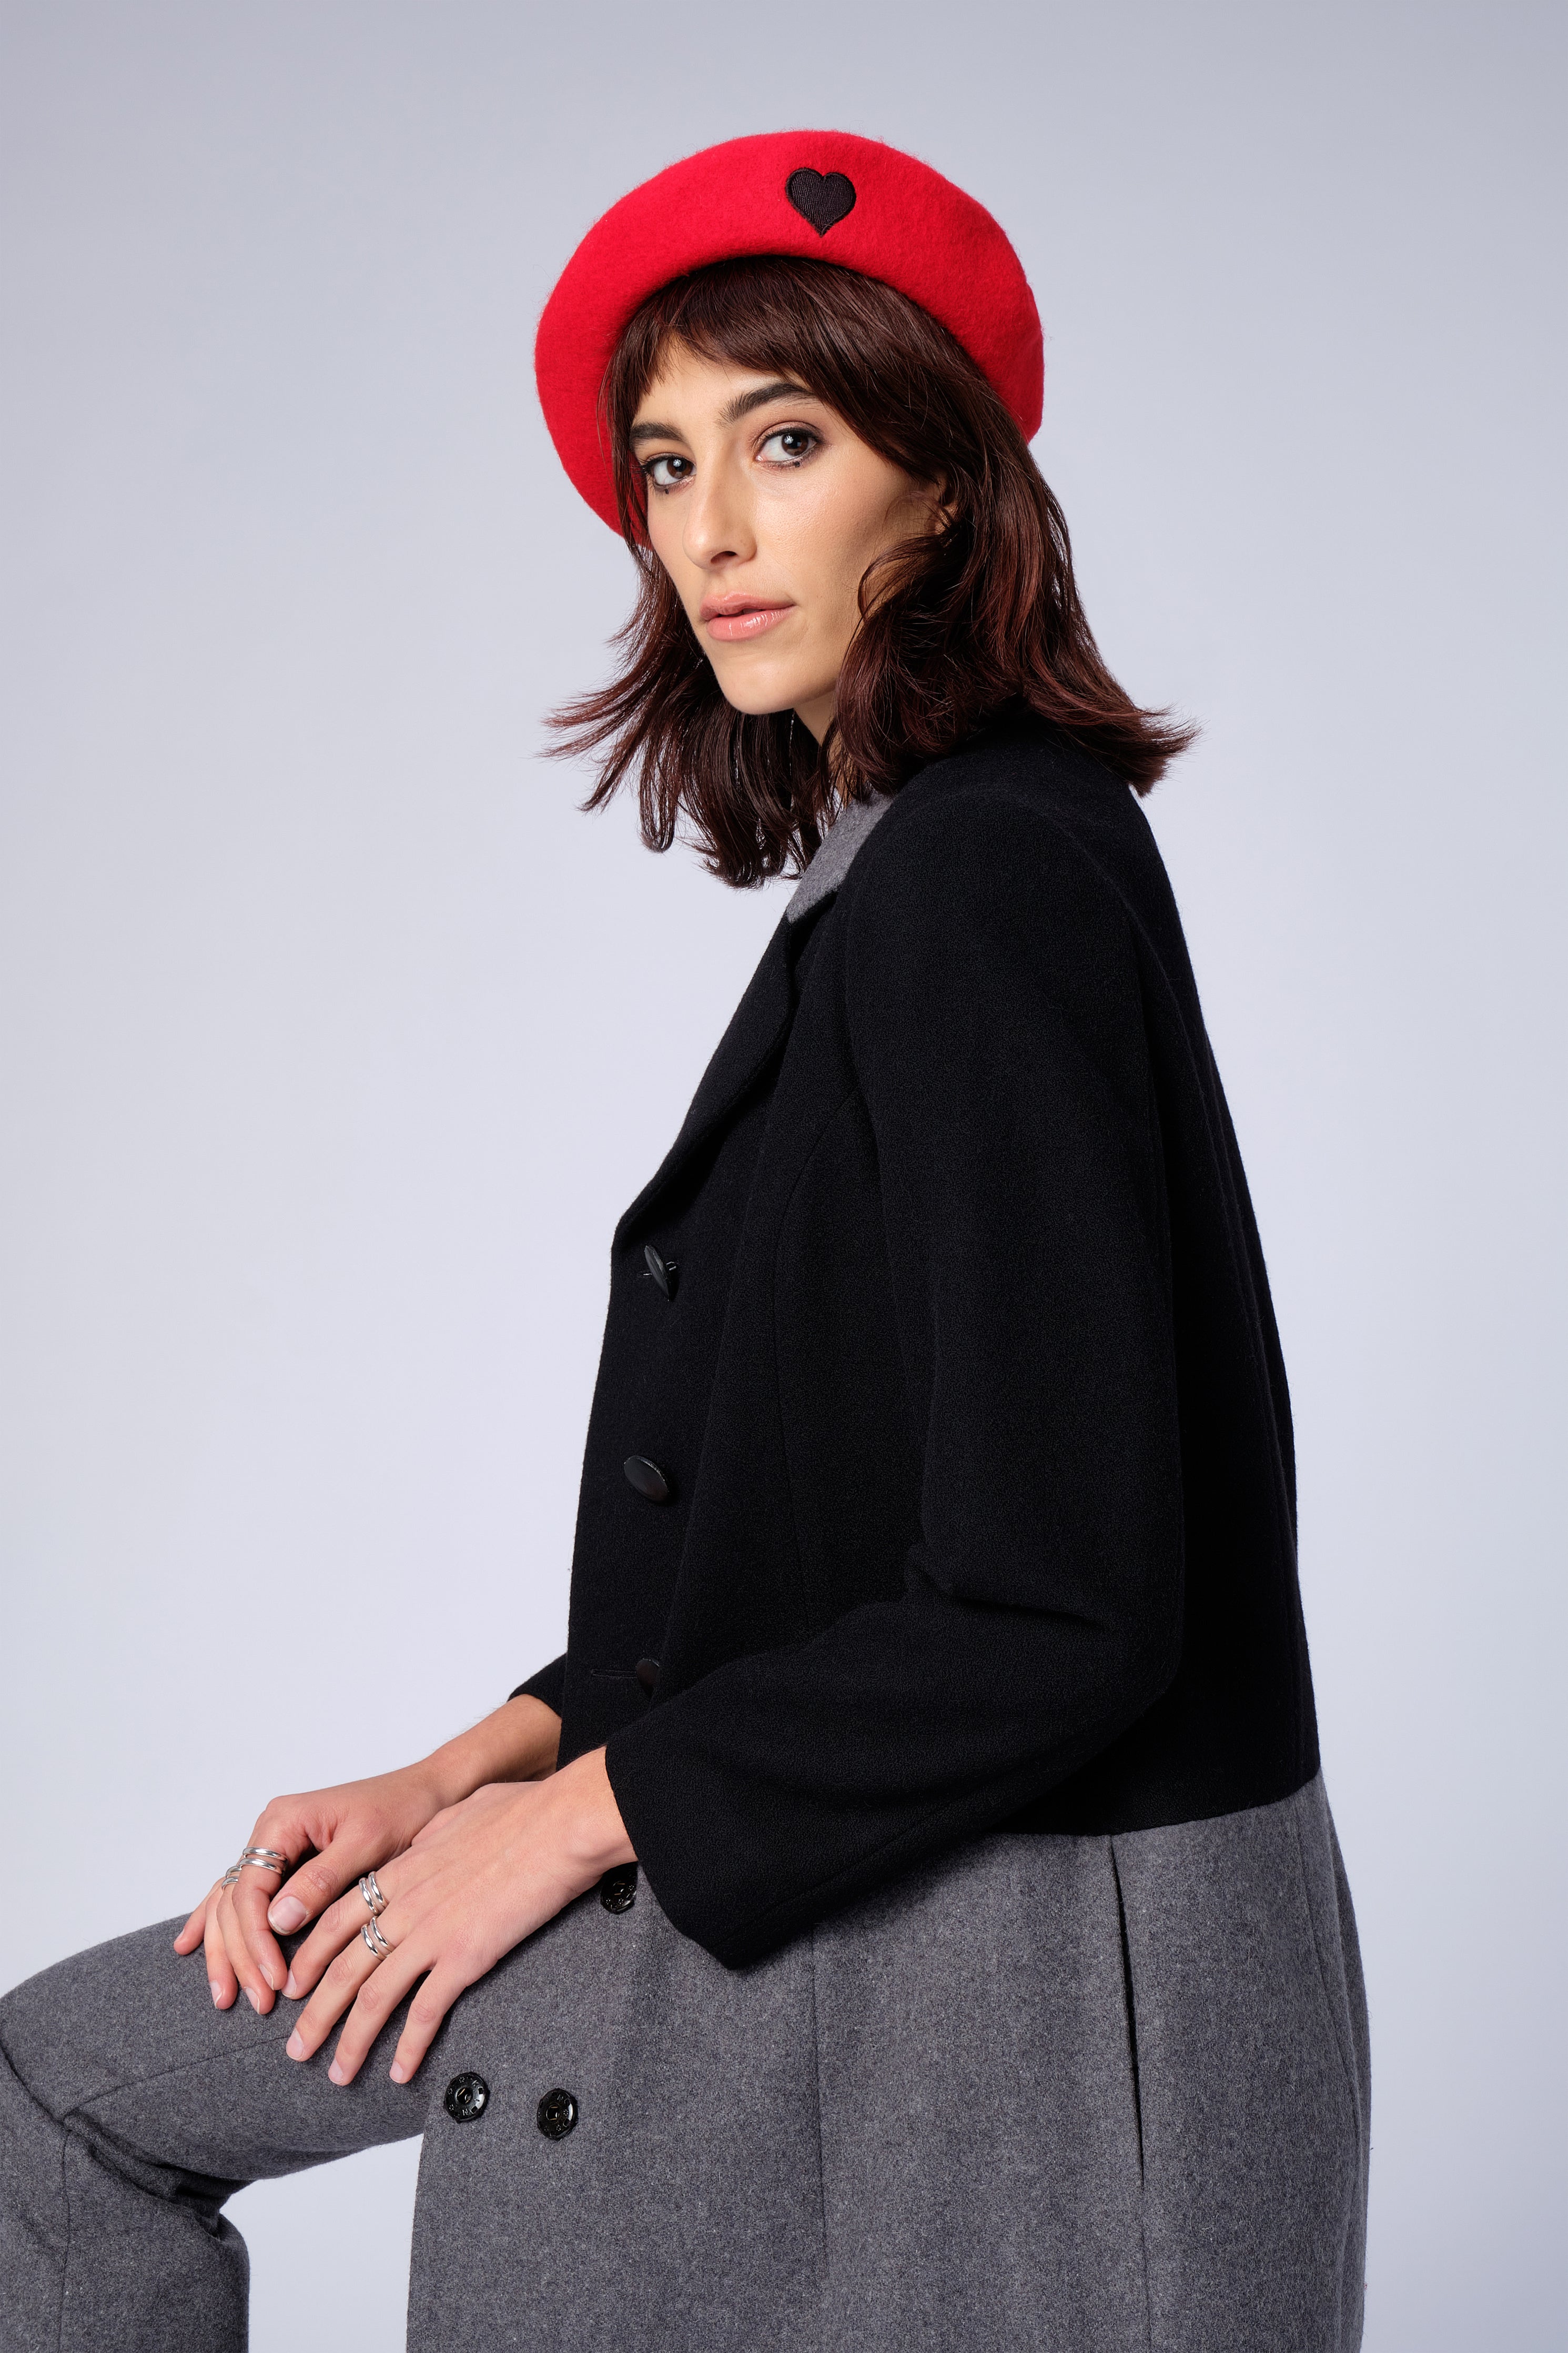 stillsveta red beret with black heart design